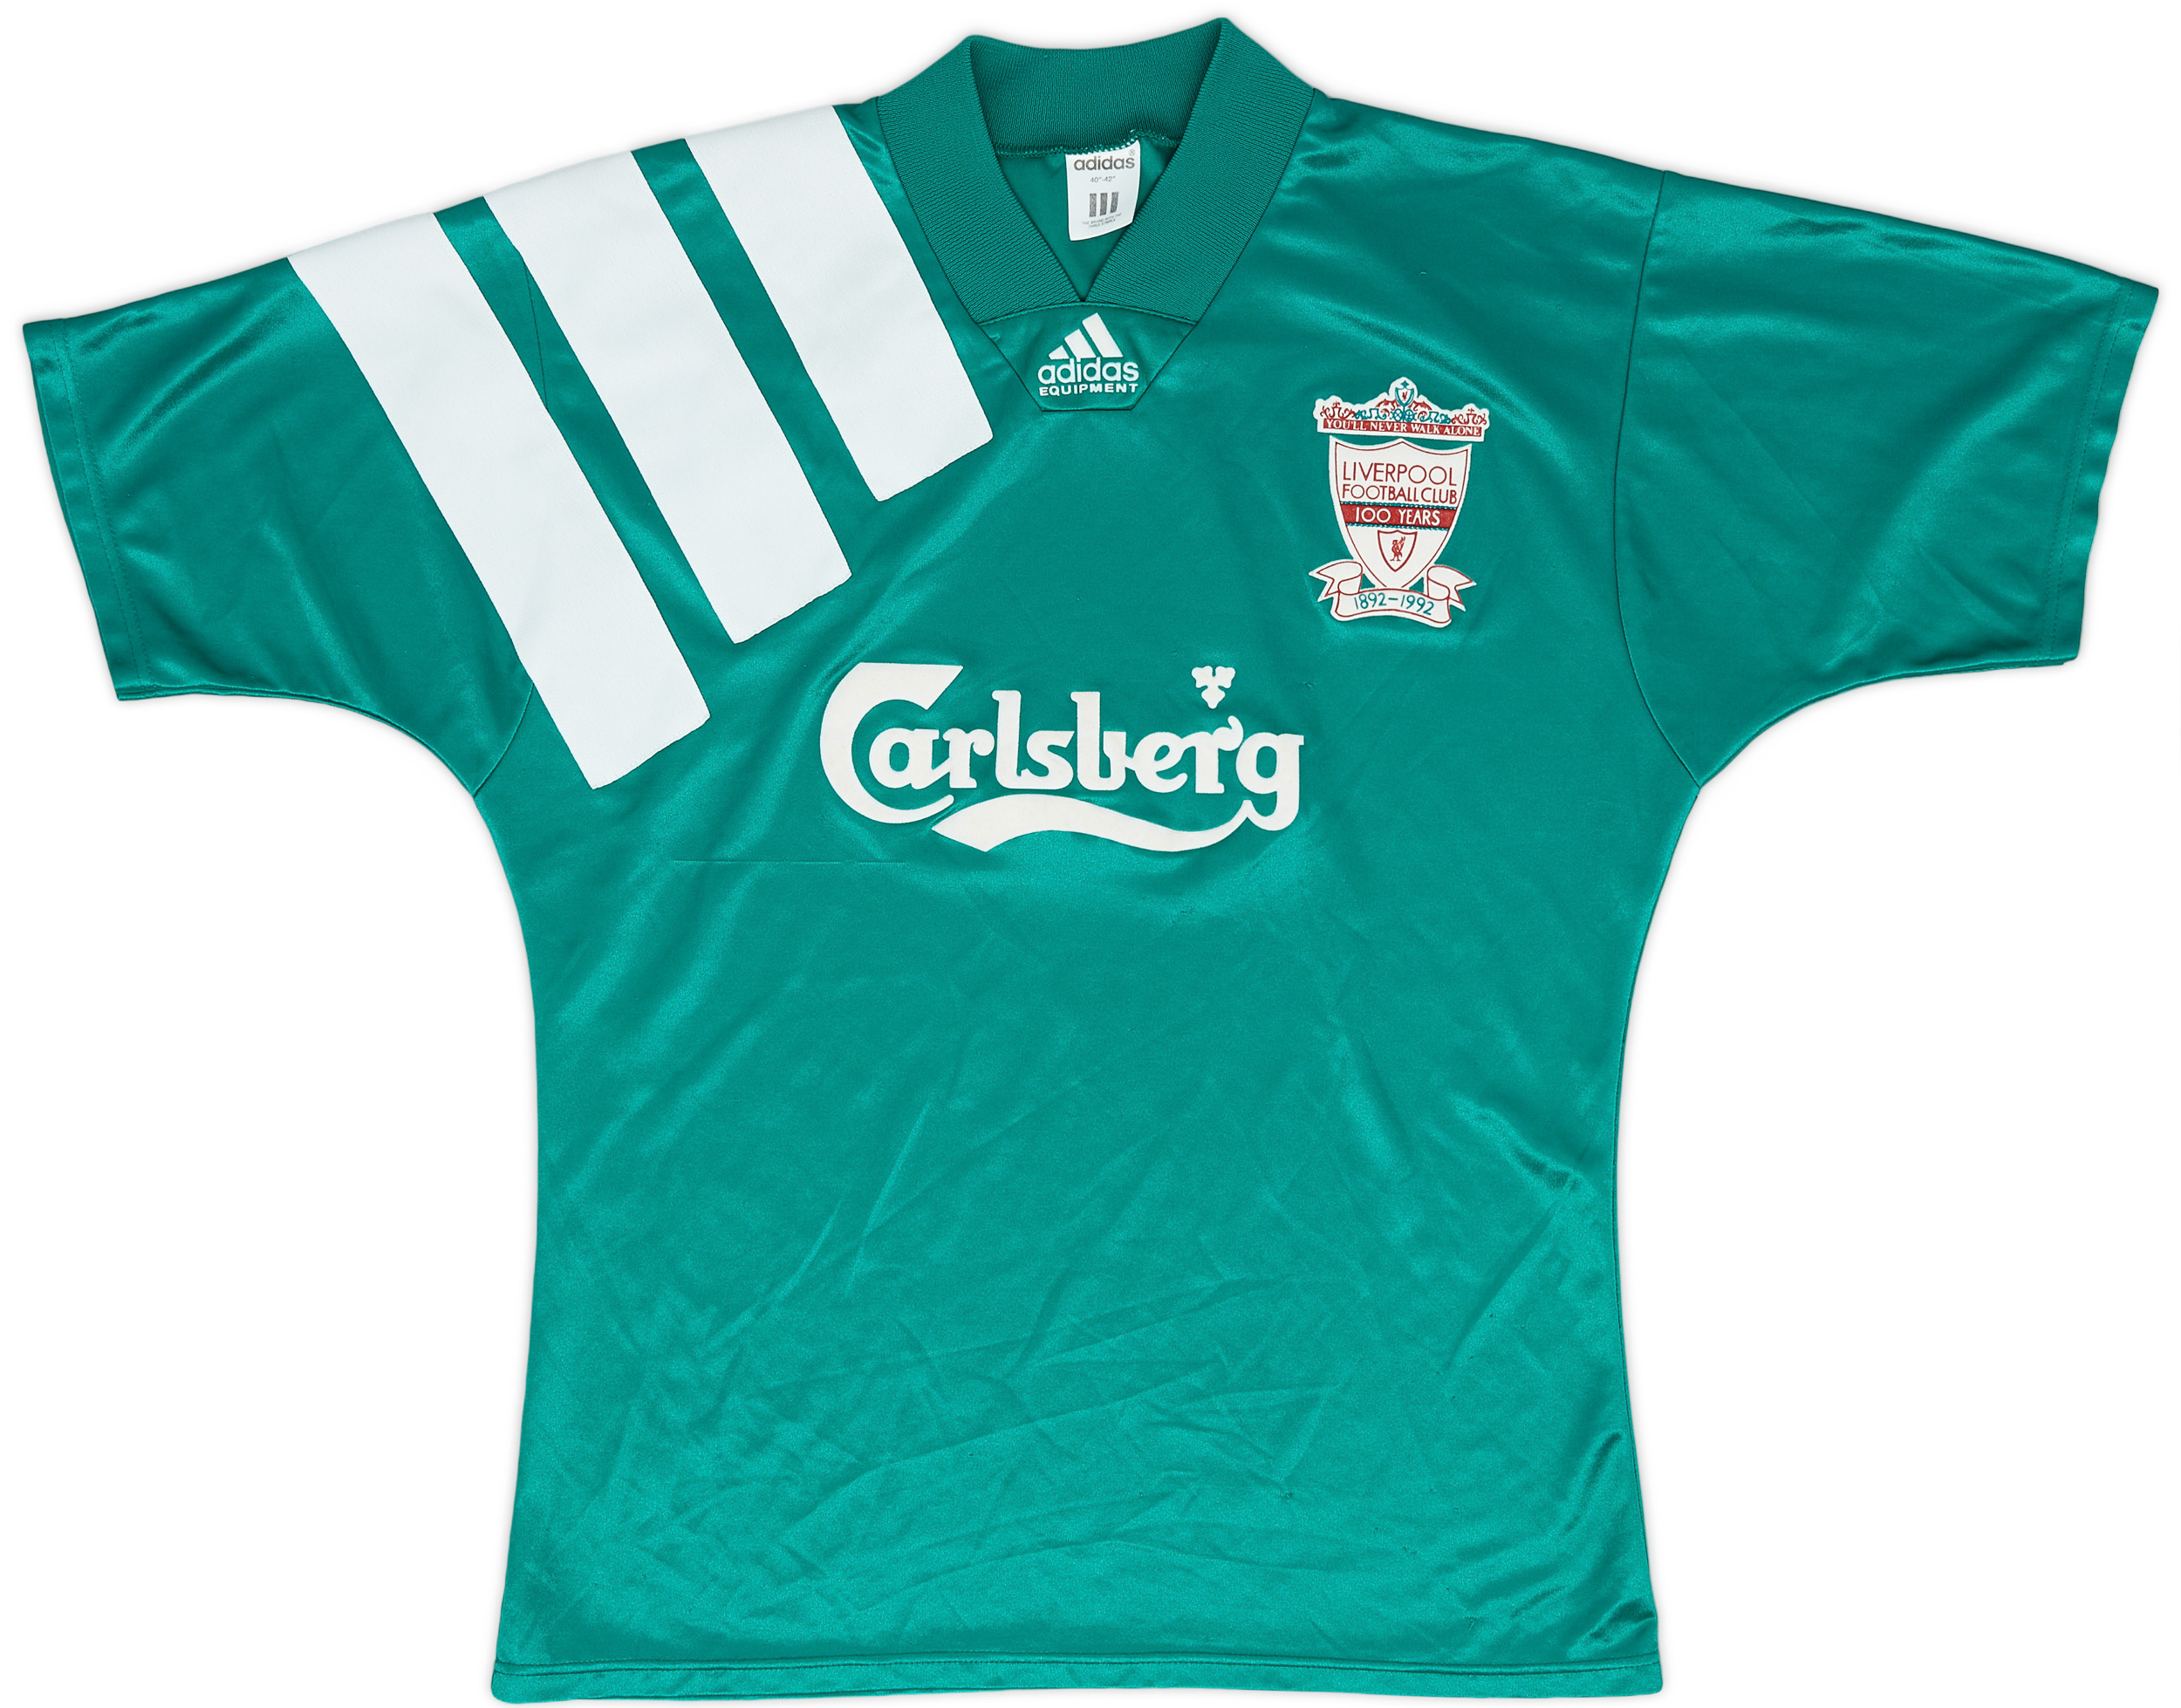 1992-93 Liverpool Centenary Away Shirt - 9/10 - (/)